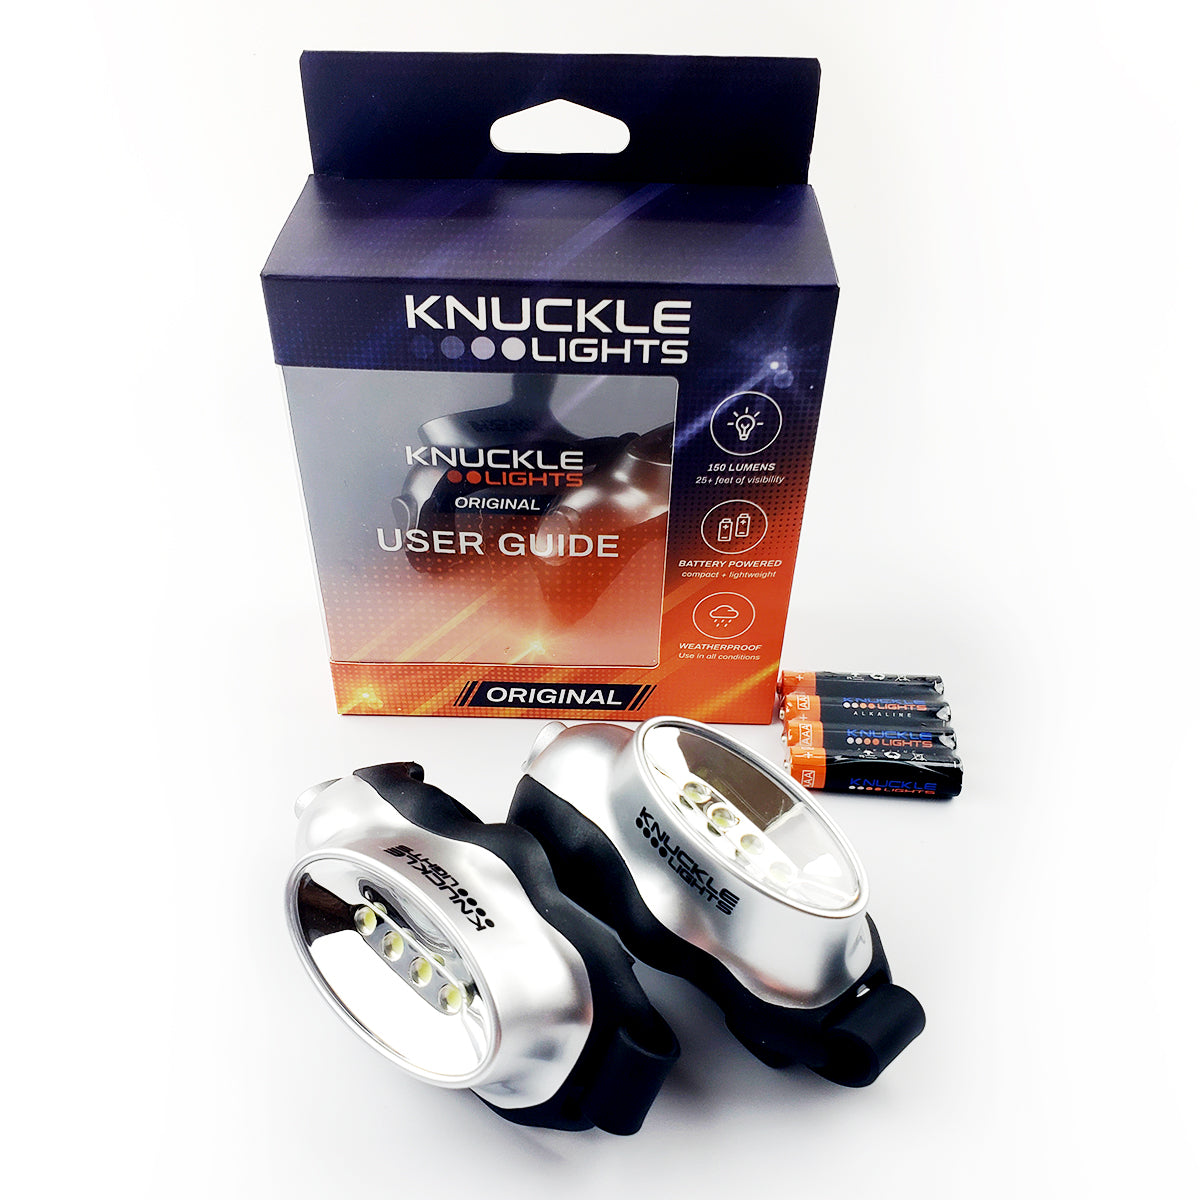 Knuckle Lights Original + FREE Safety Gear Bundle